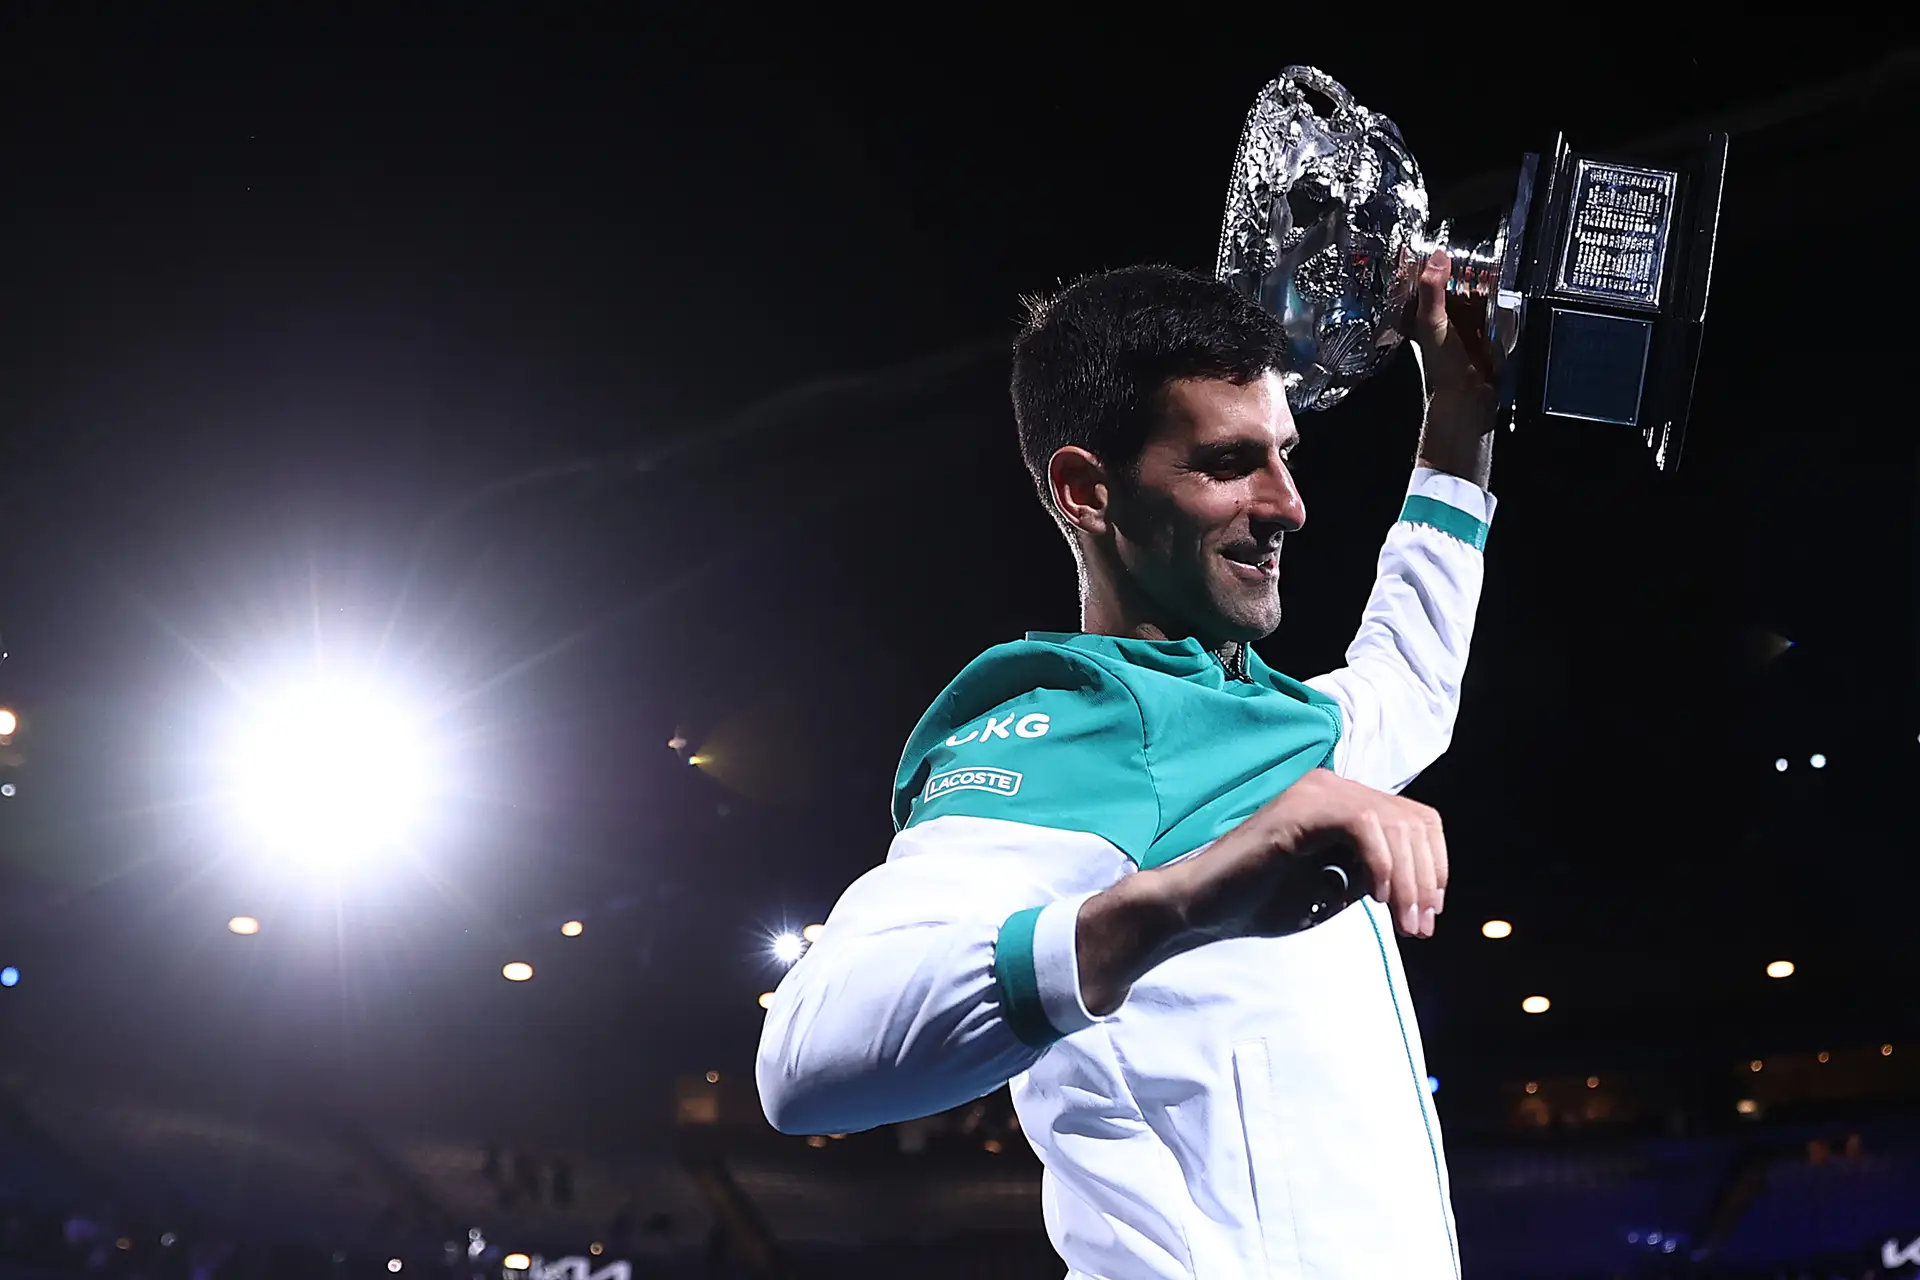 Djokovic ultrapassa Federer e é o jogador com mais vitórias na O2